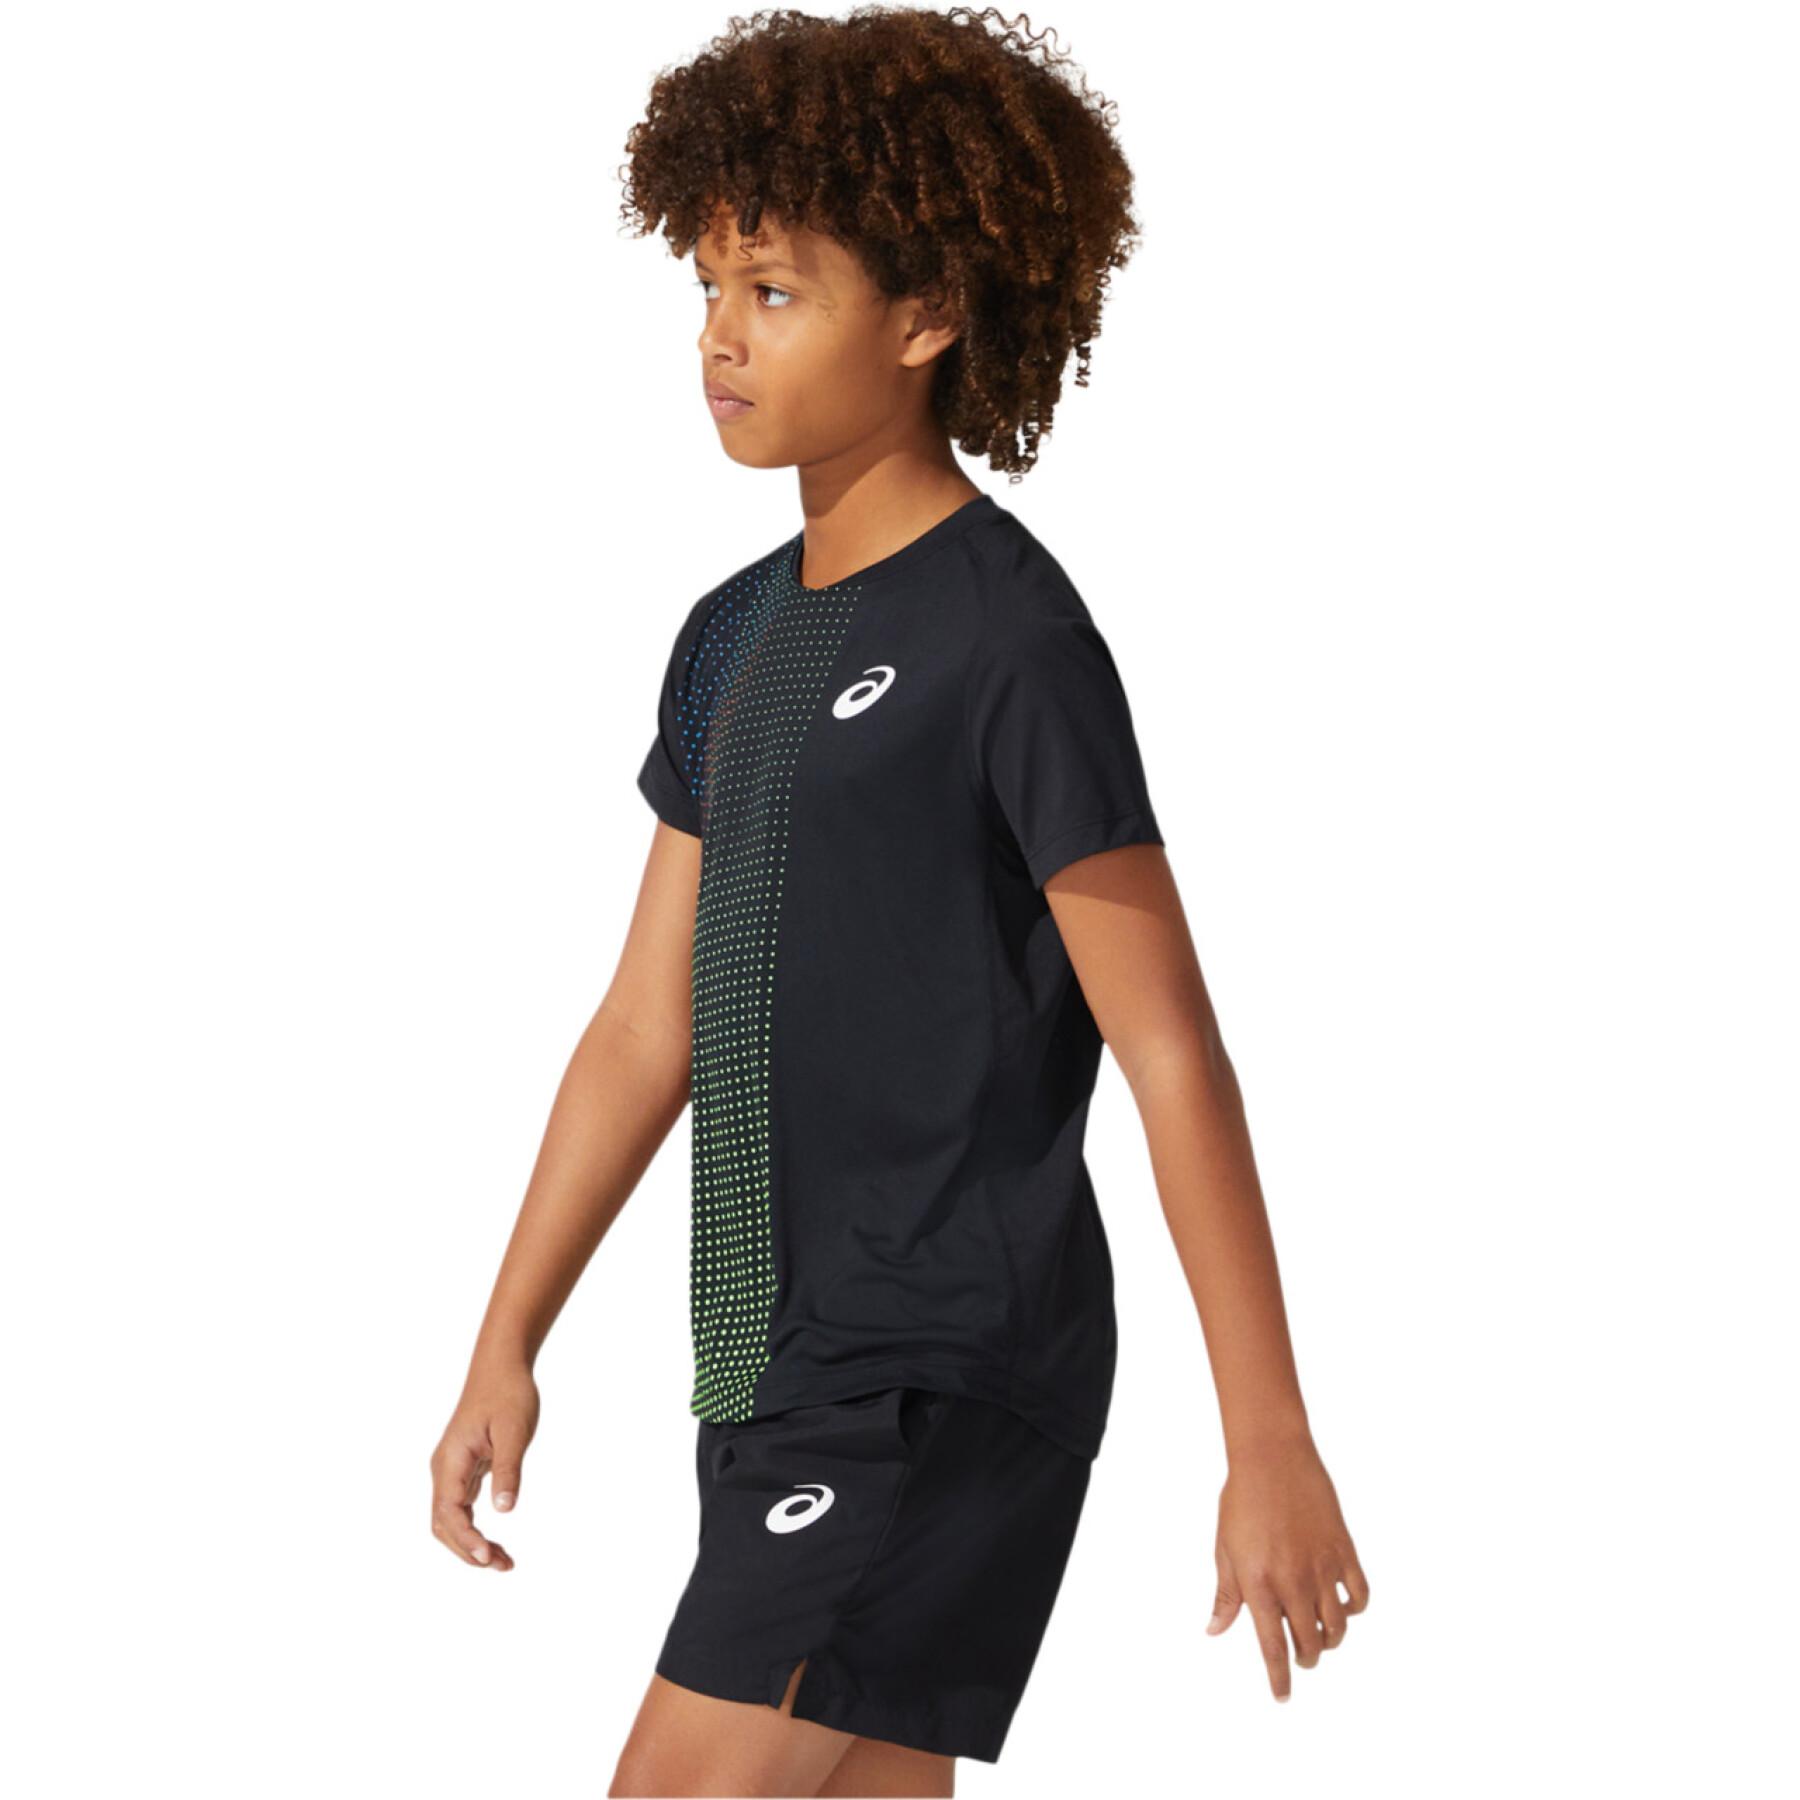 Koszulka dziecięca bez rękawów Asics Boys Tennis Graphic